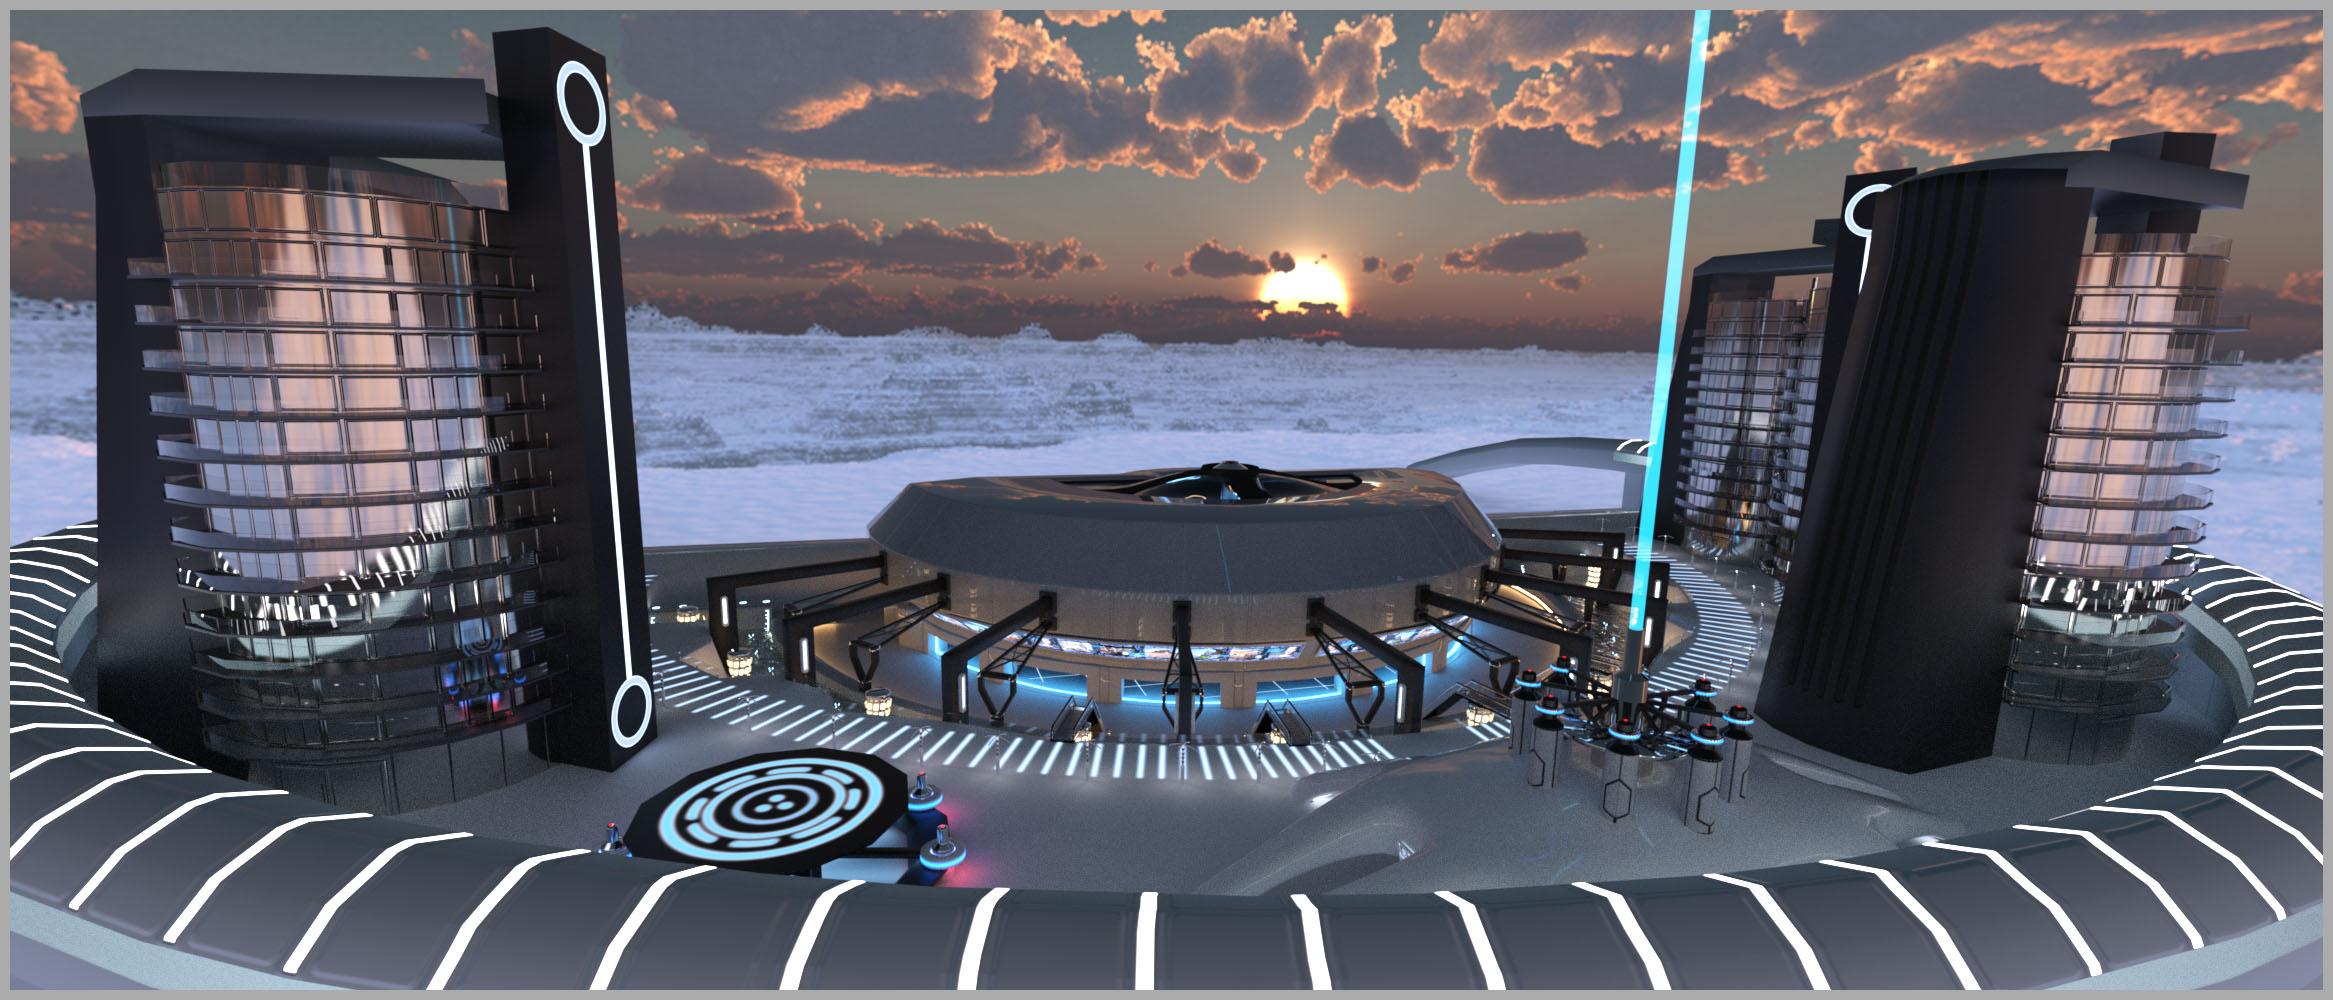 Sci-fi Transit Terminal by: Studio360, 3D Models by Daz 3D